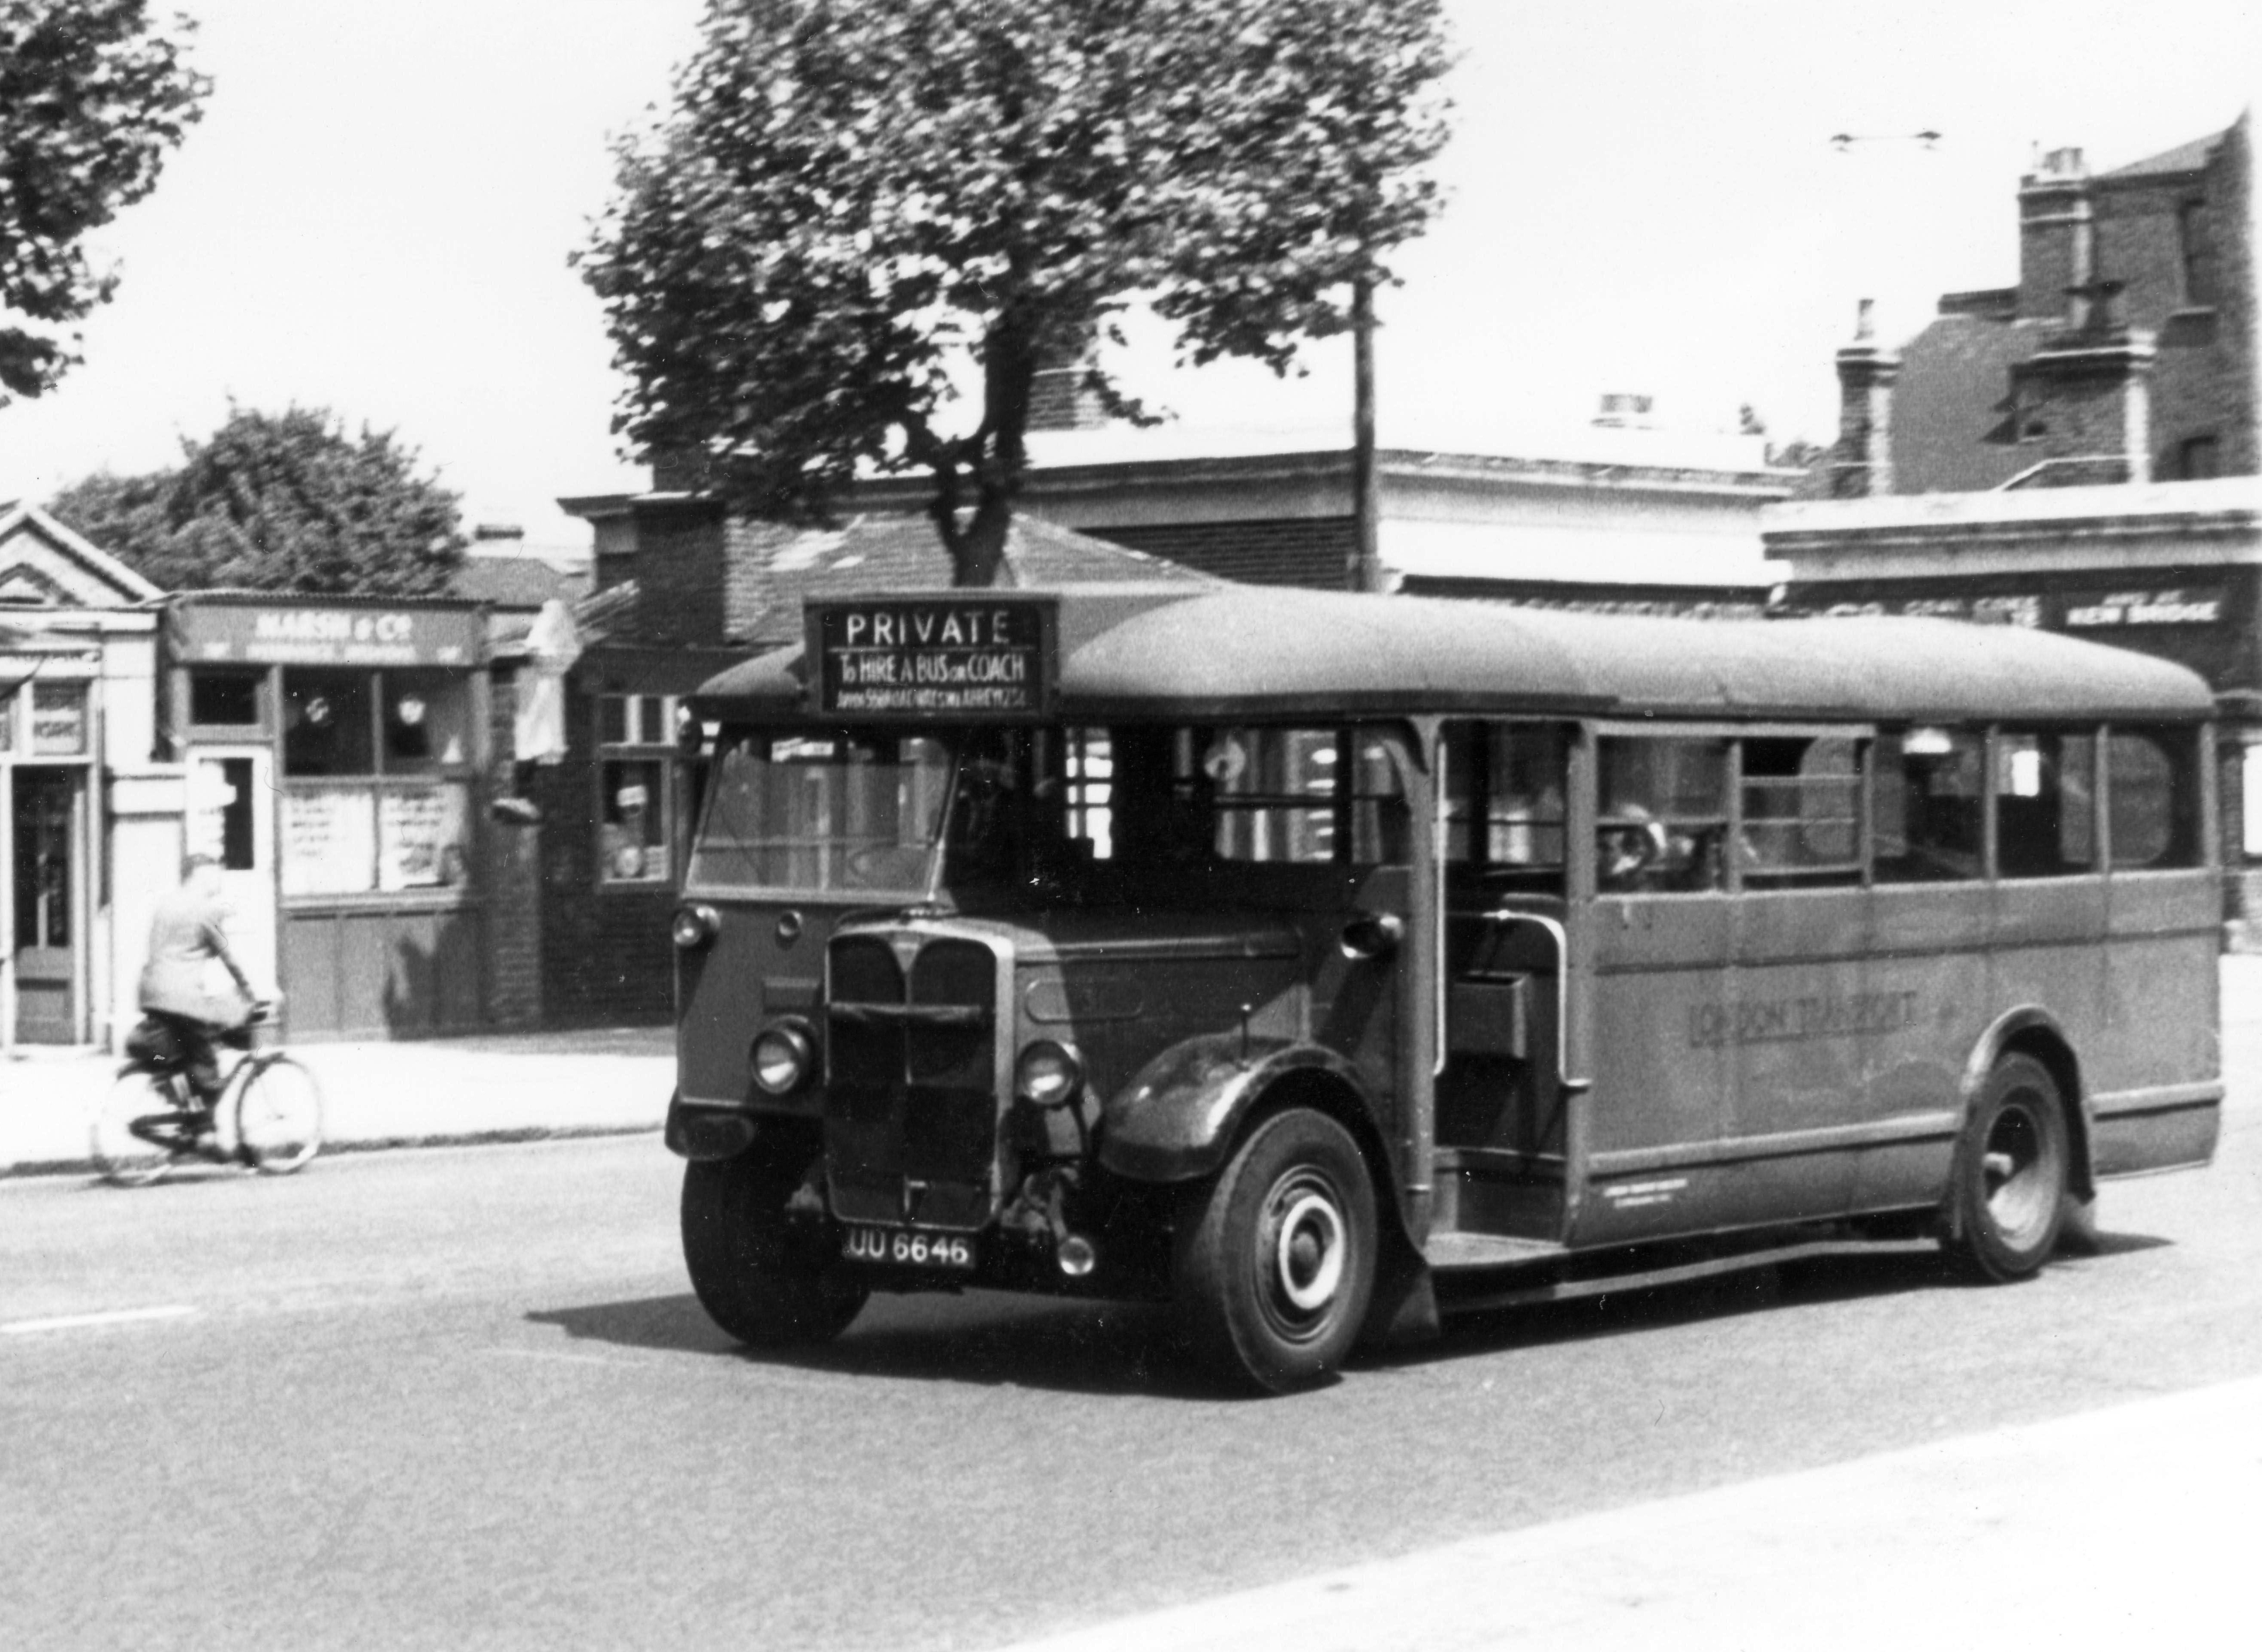 1929 AEC Regal I bus - T31 - London Bus Museum